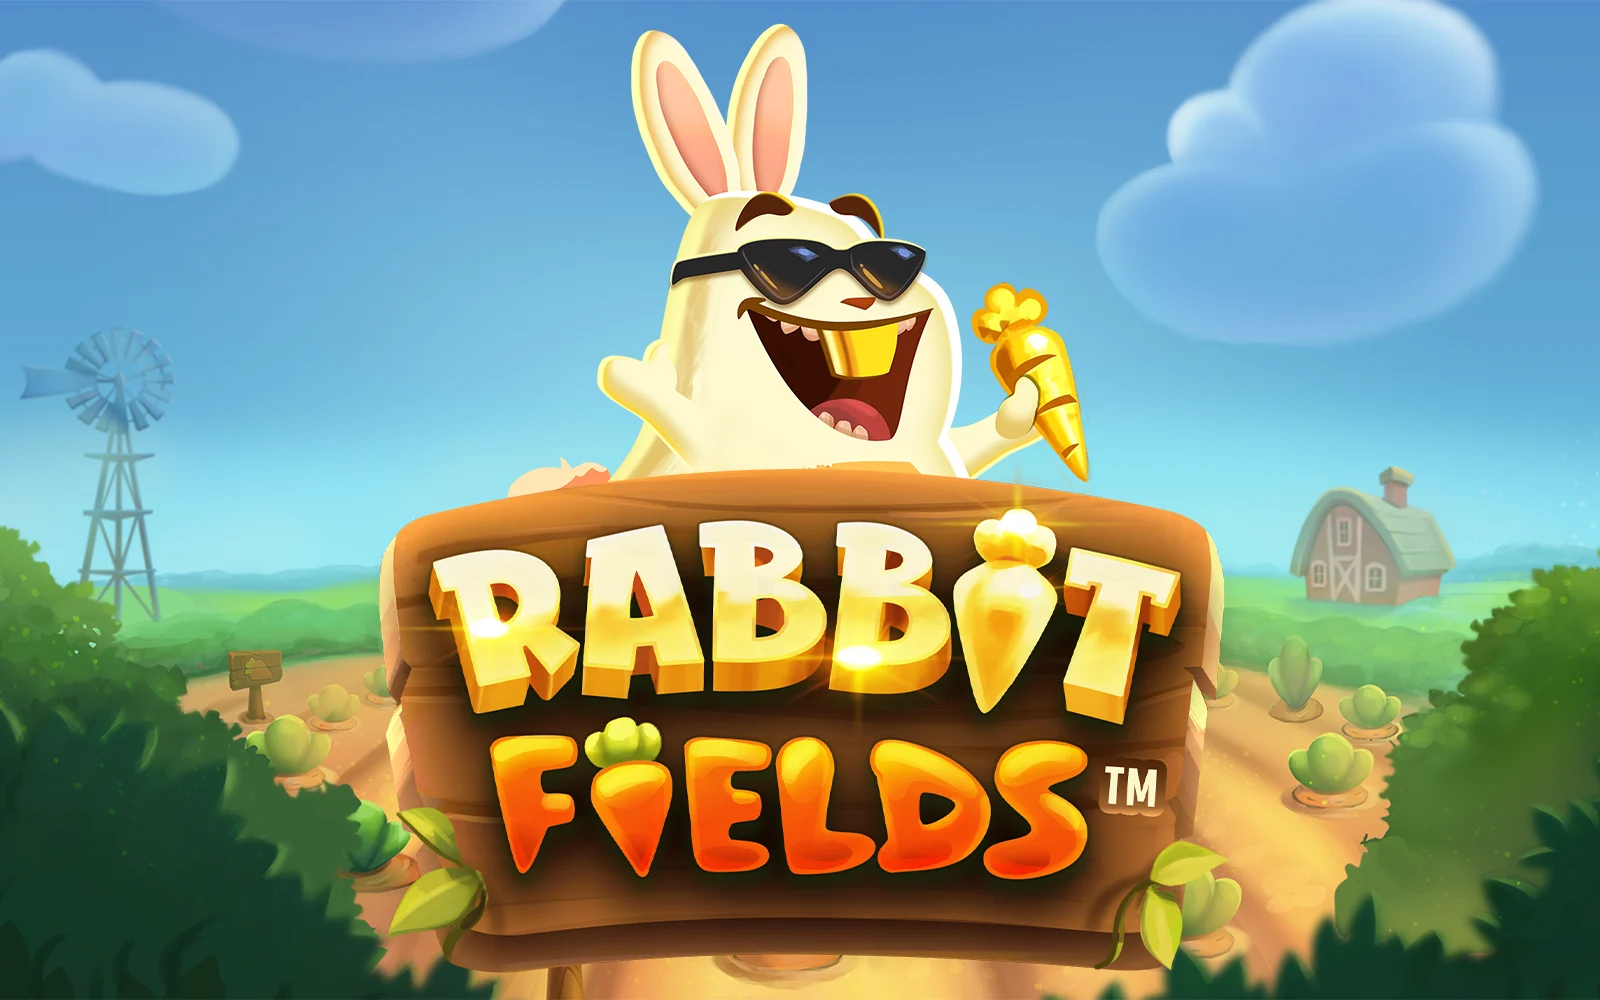 Play Rabbit Fields™ on Starcasino.be online casino